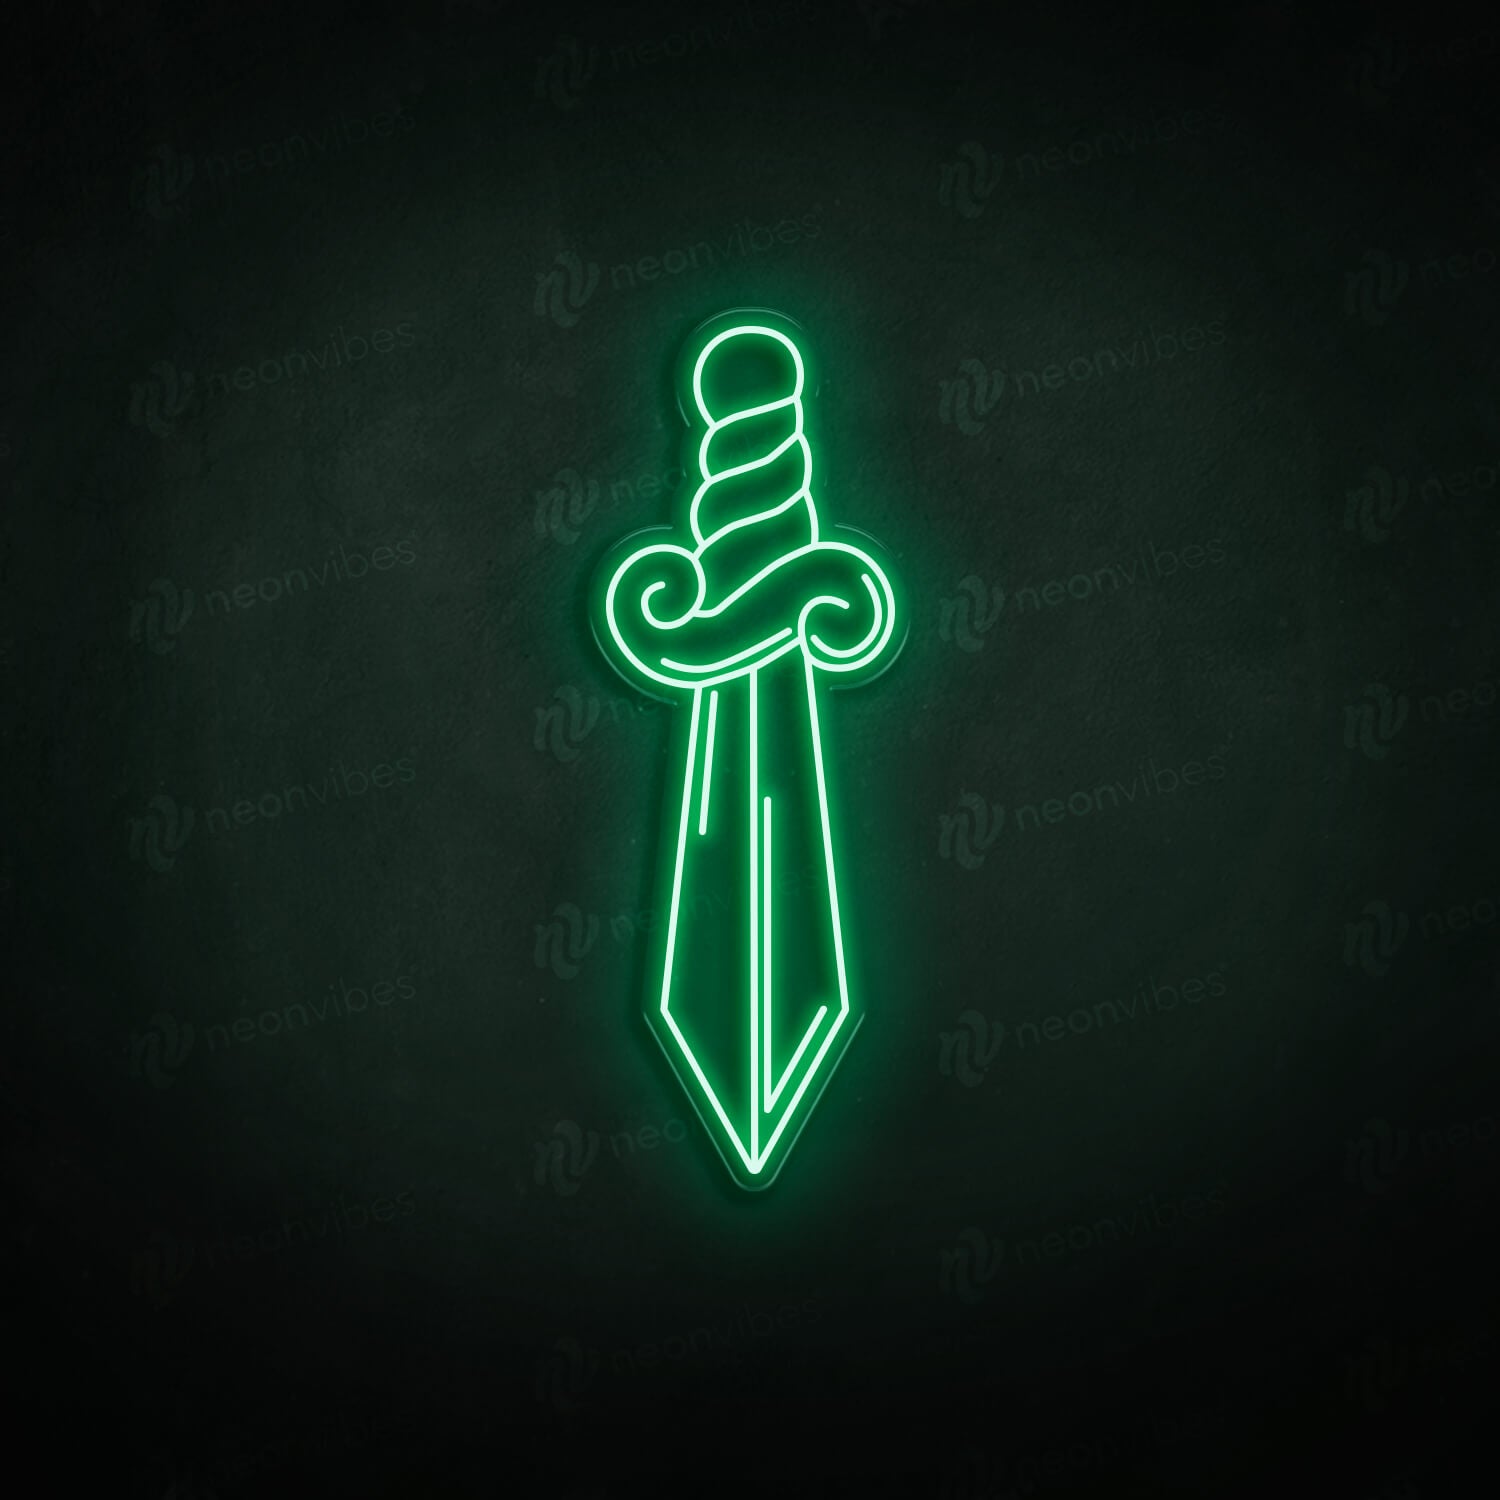 Sword neon sign